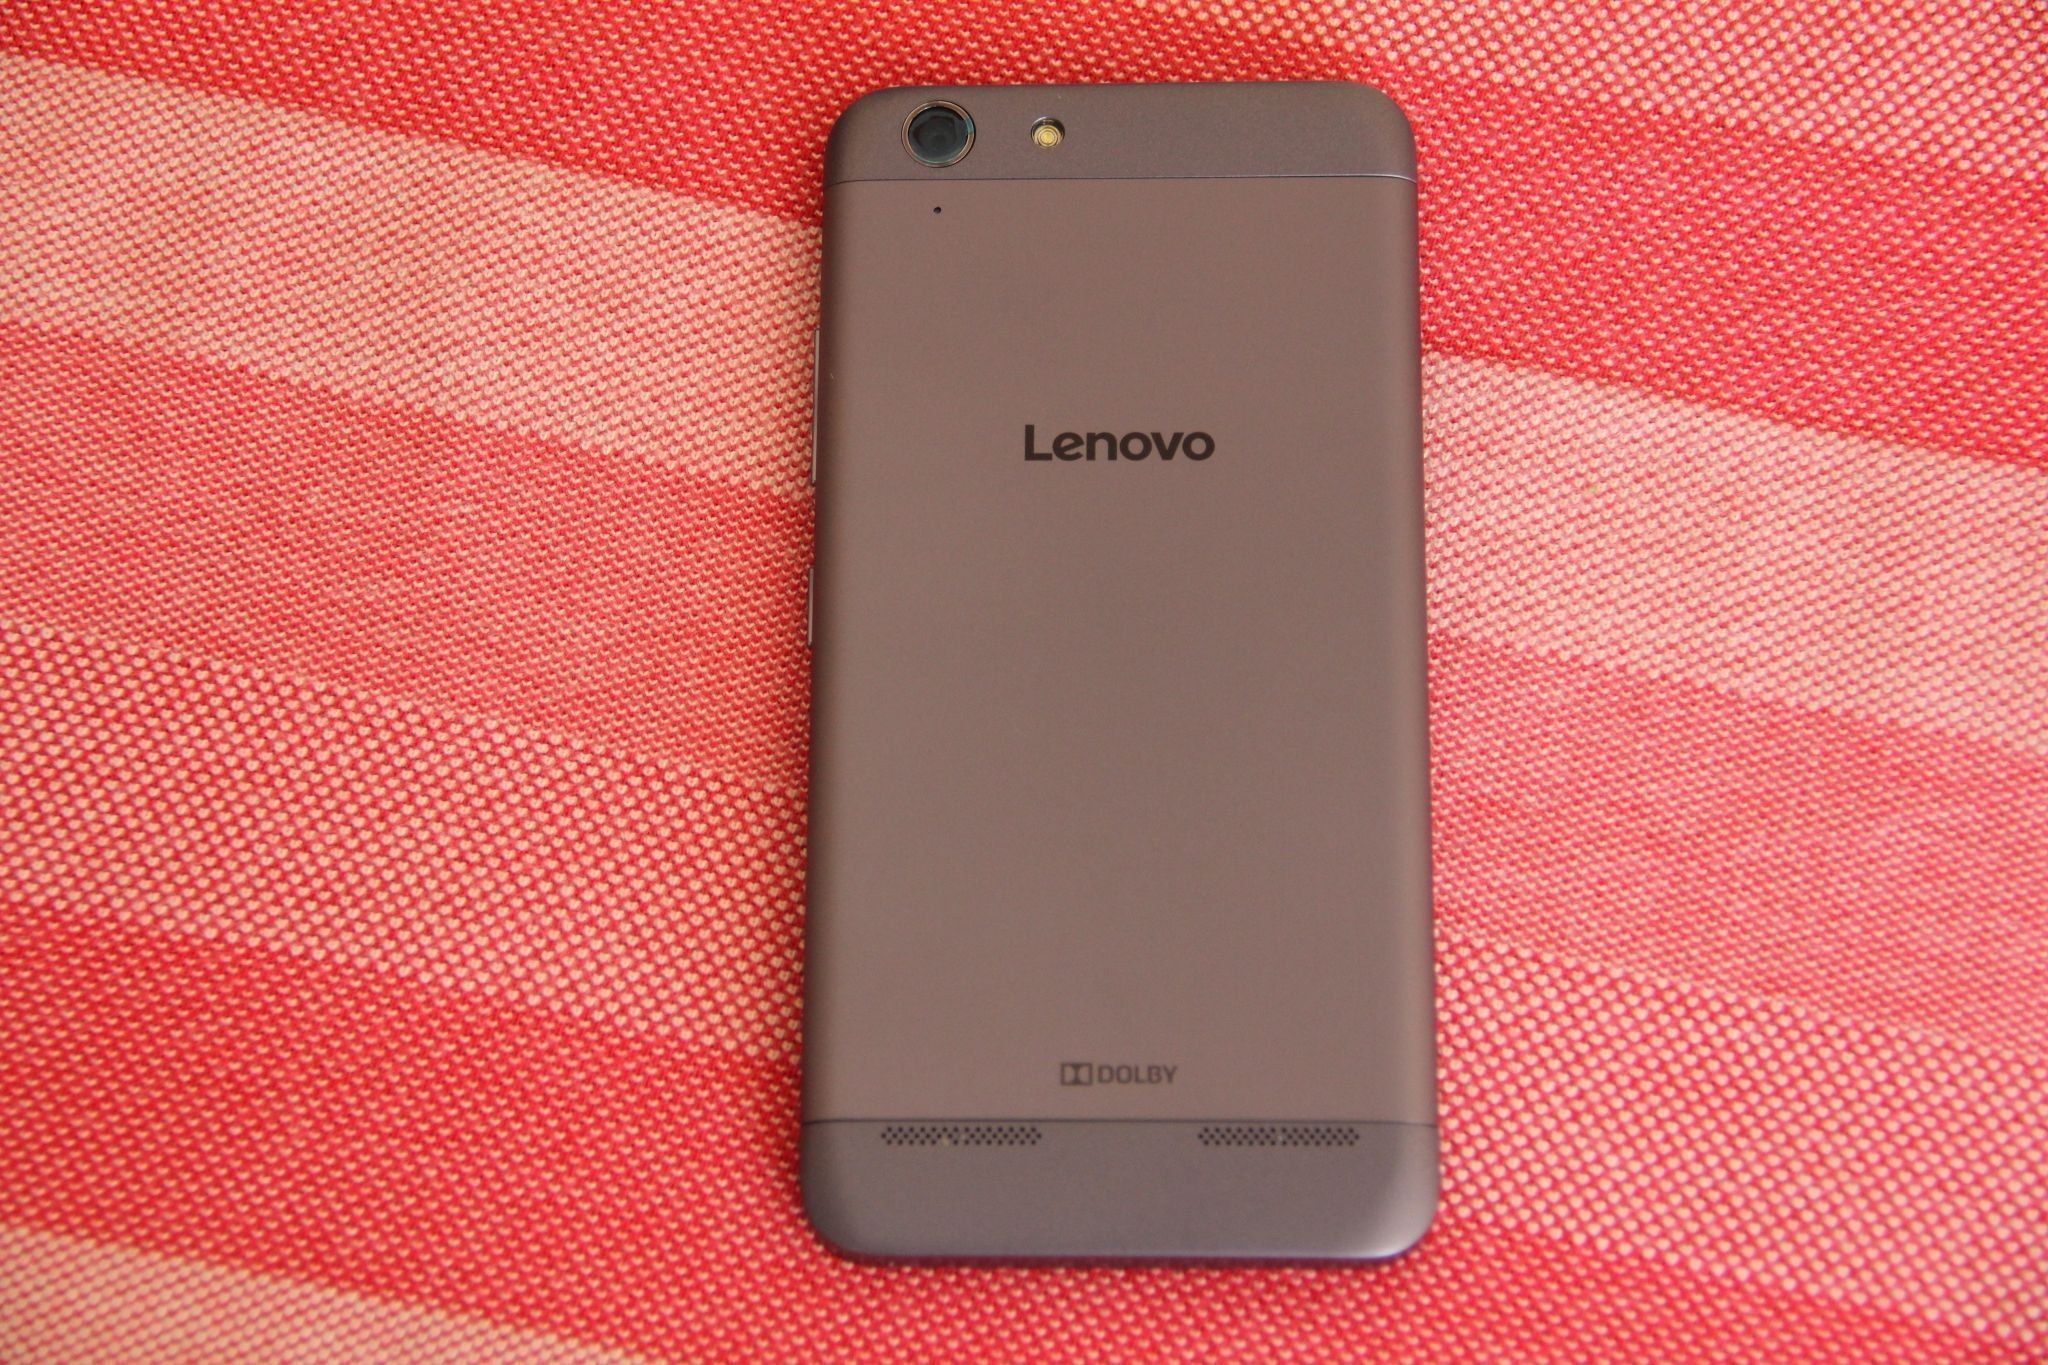 Lenovo Vibe K5-smarttelefon: en gave til musikkelskere